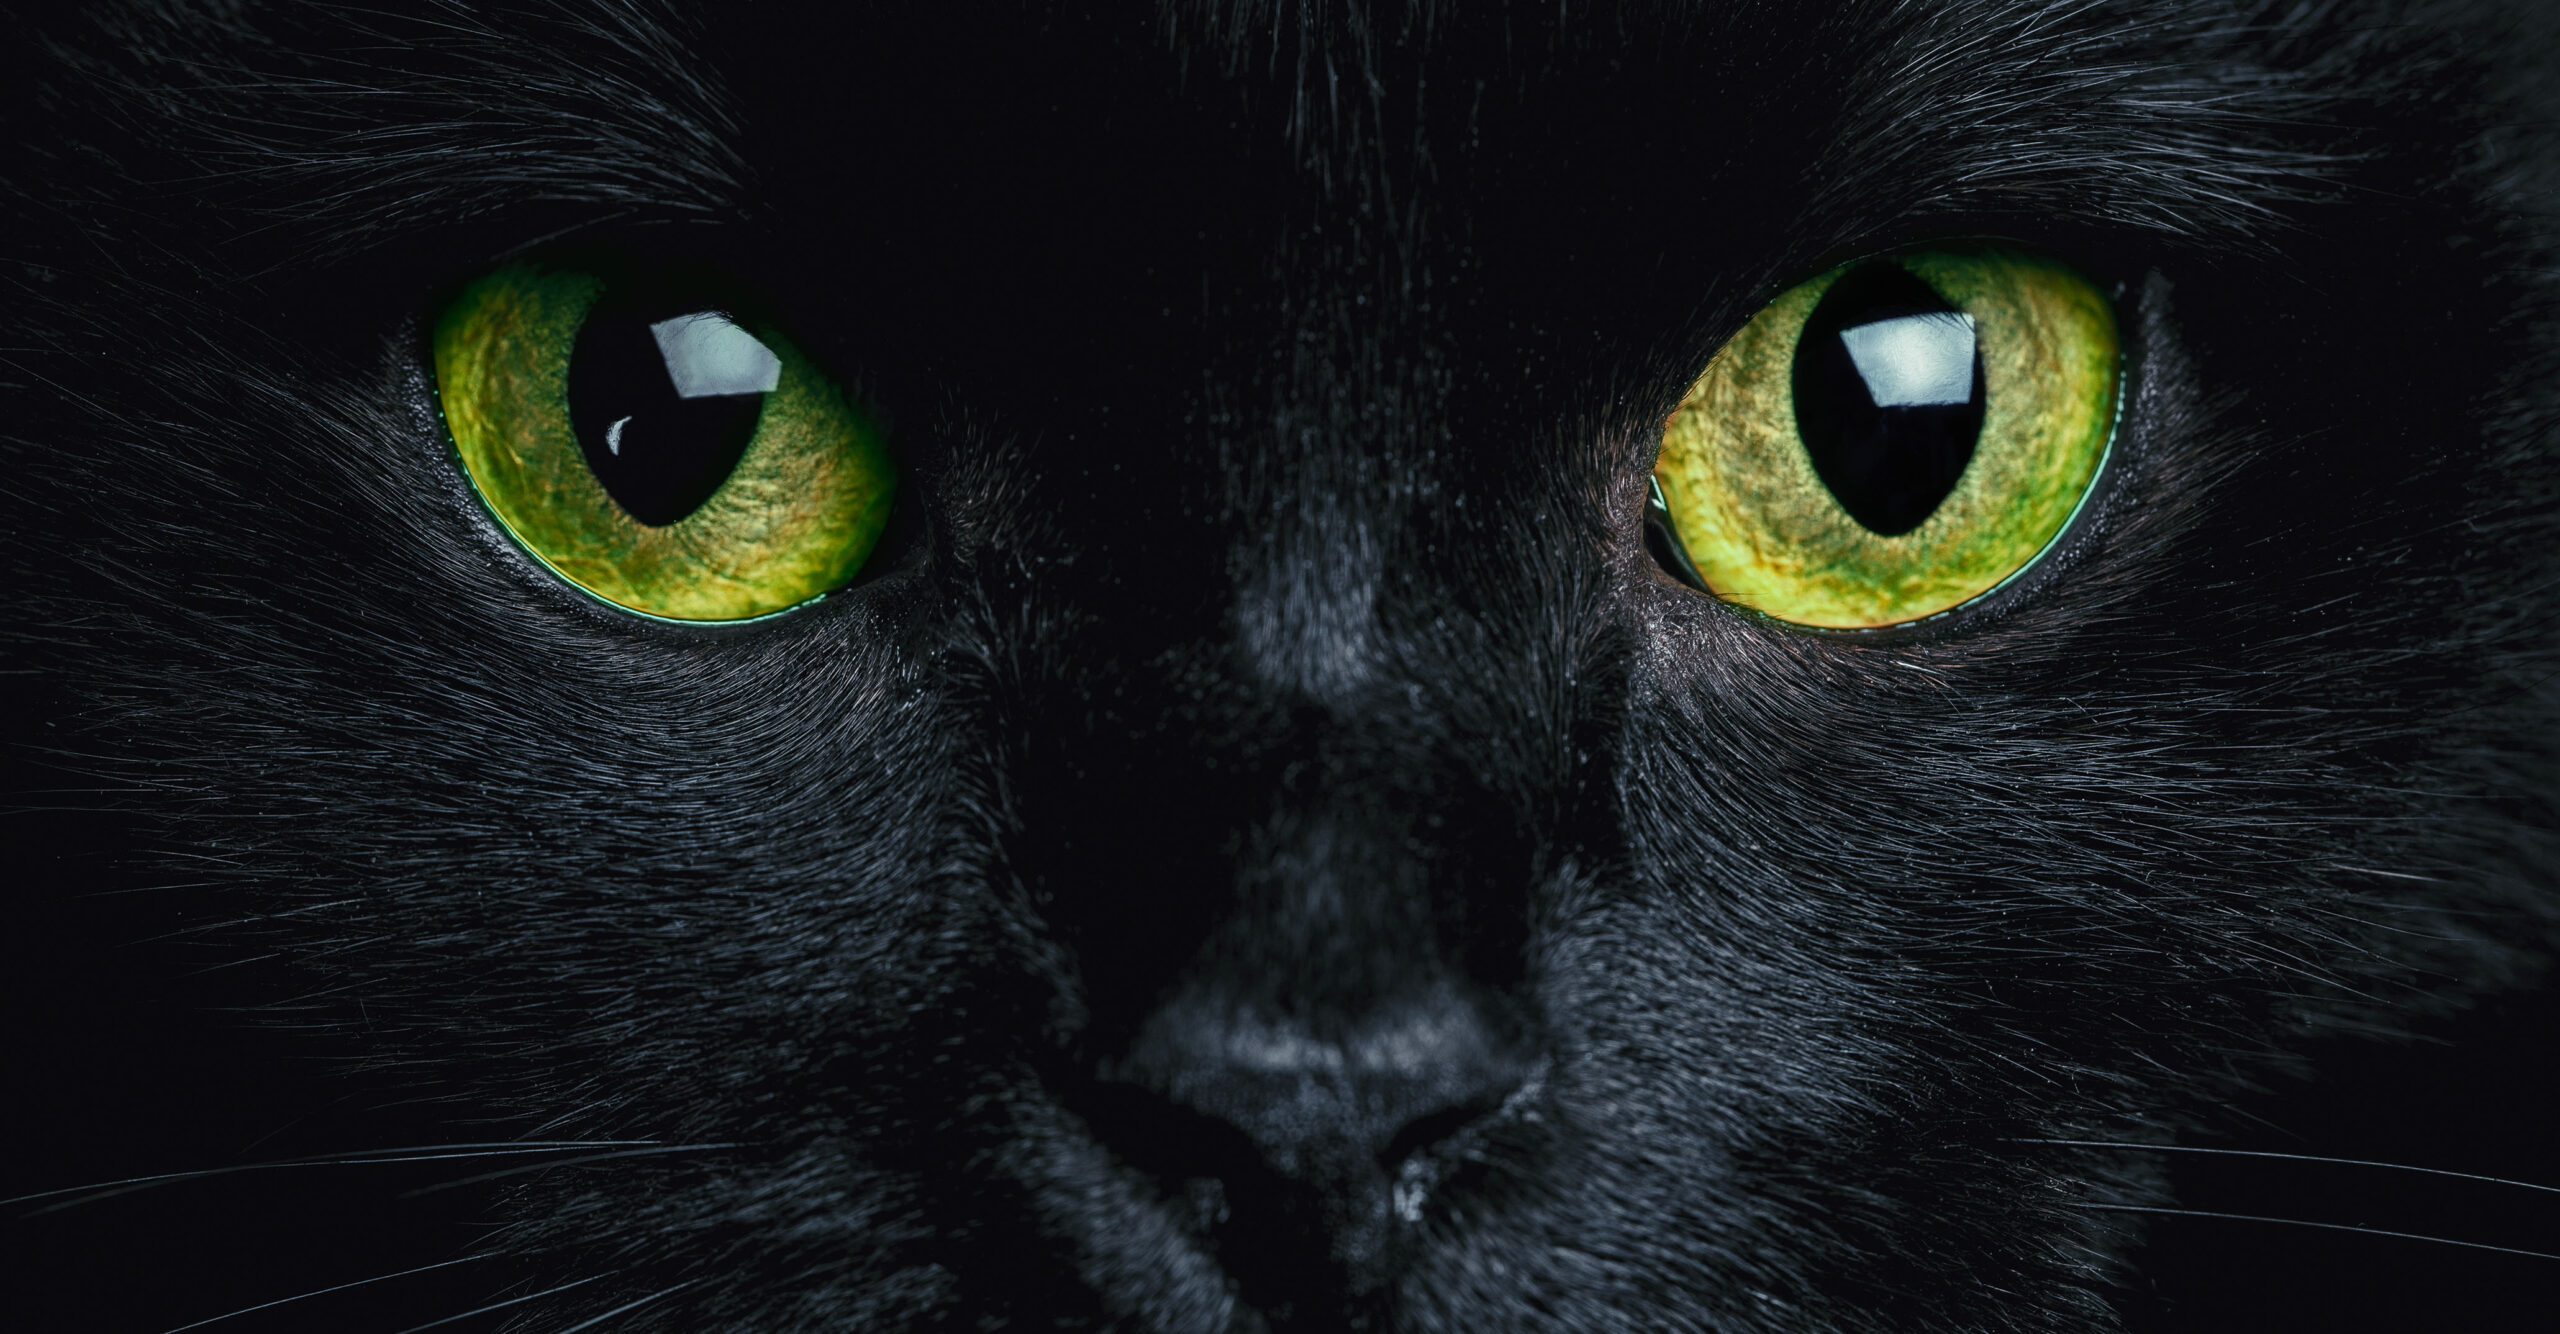 Augenfarben bei Katzen: Bedeutung der unterschiedlichen Farben